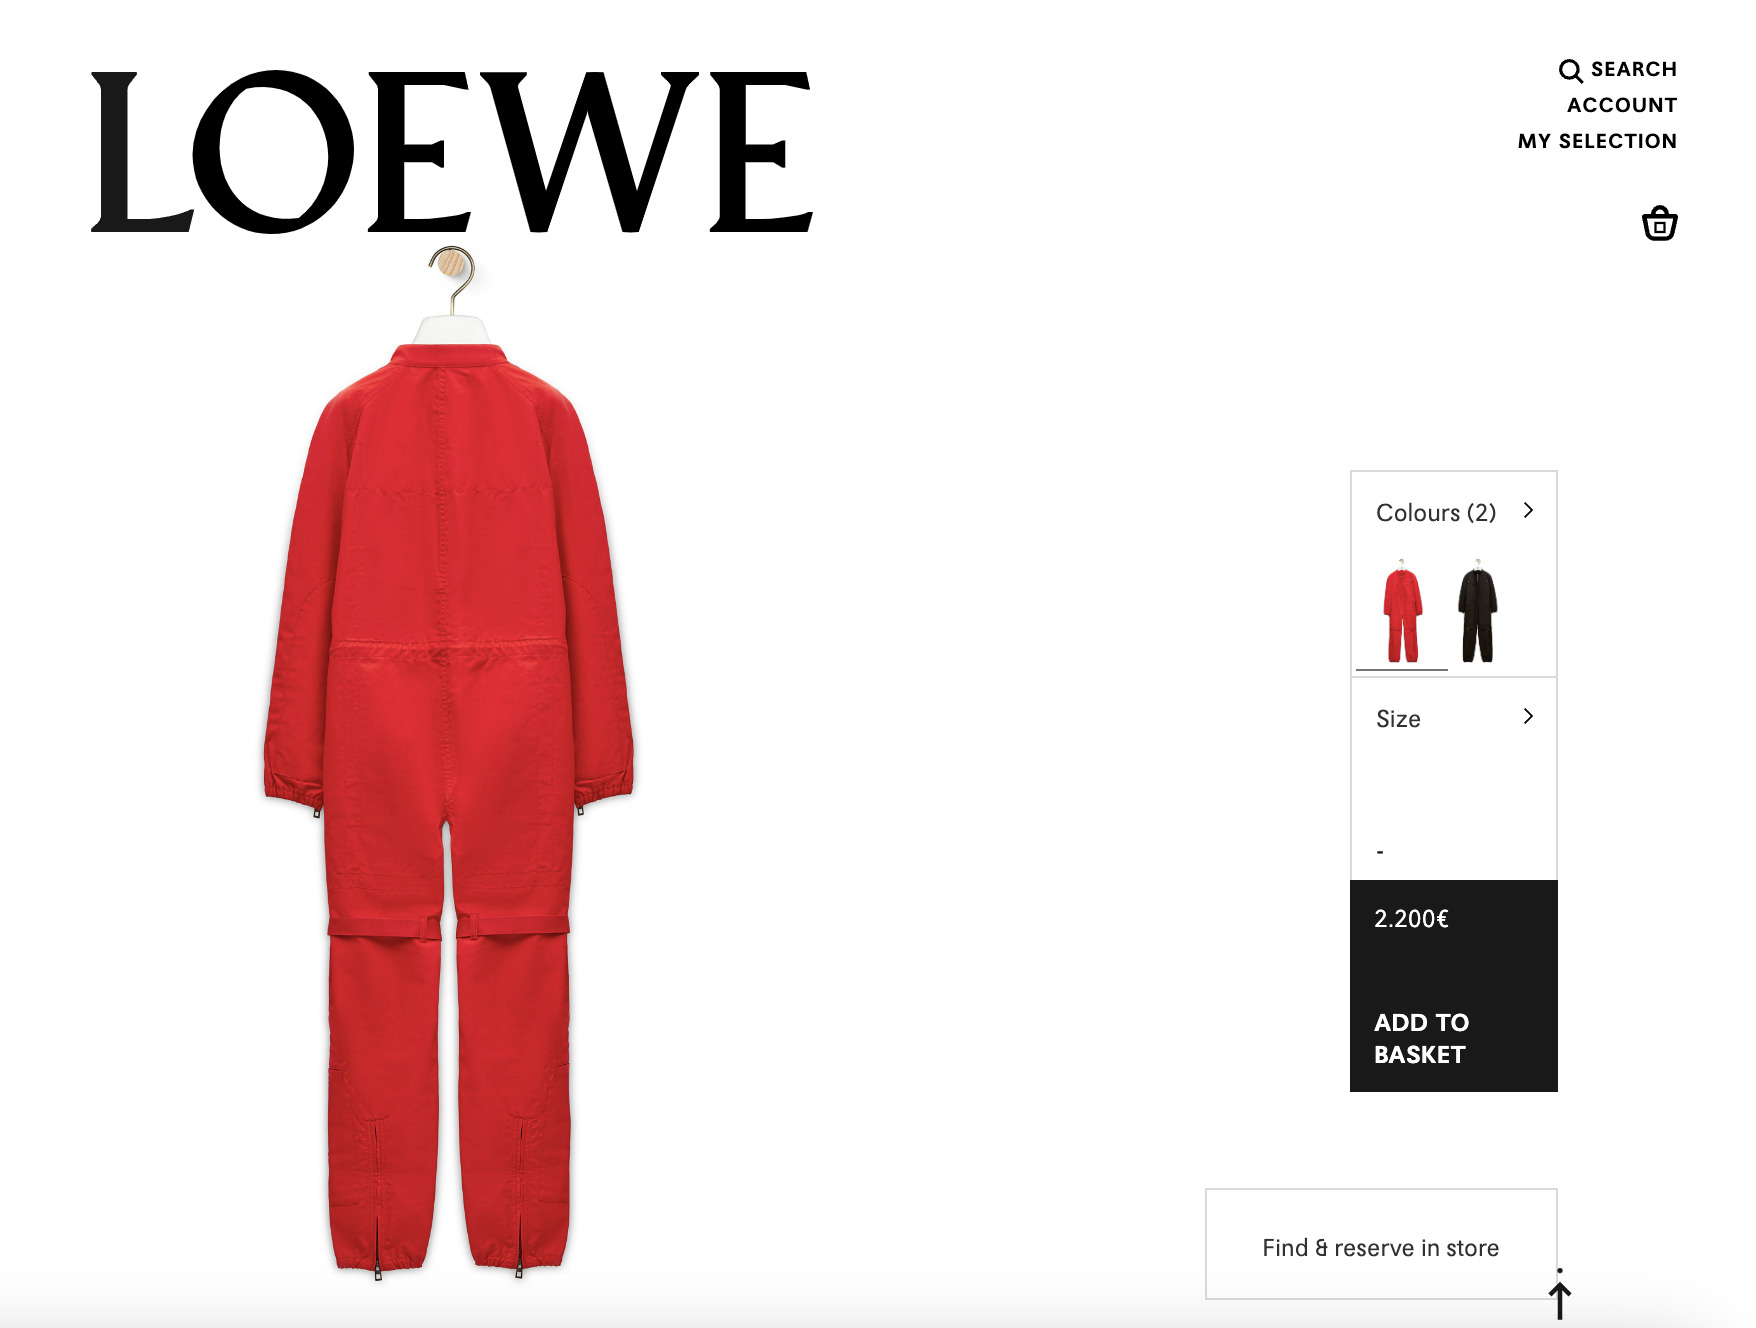 La combinaison rouge Loewe inspirée de celle portée par Rihanna au Super Bowl